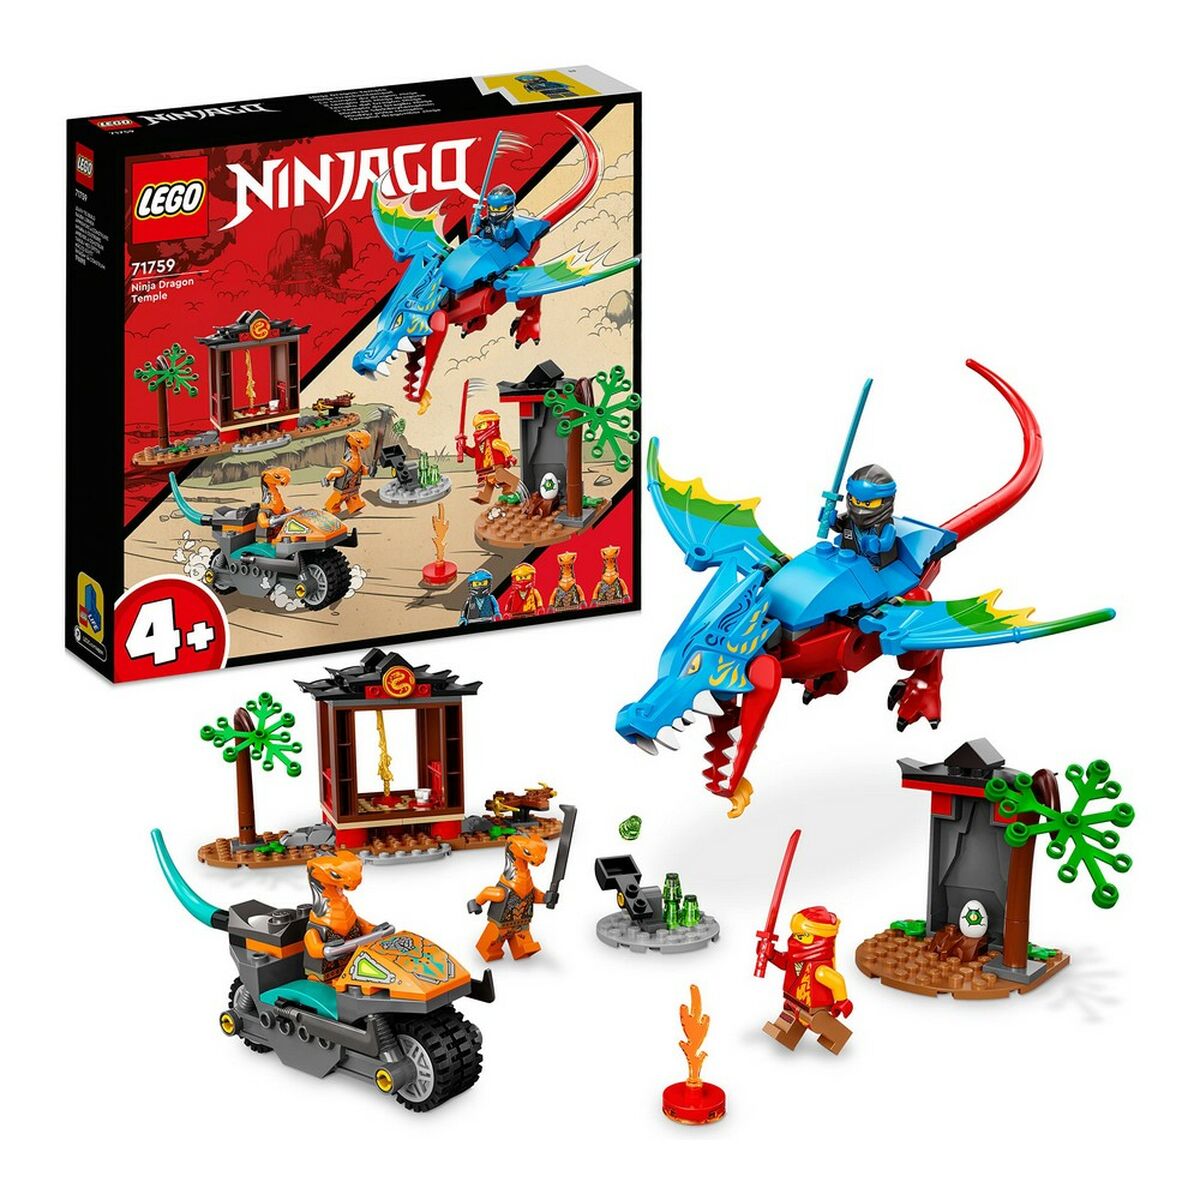 Speelset Lego Ninjago Ninja Dragon Temple 161 stuks 71759